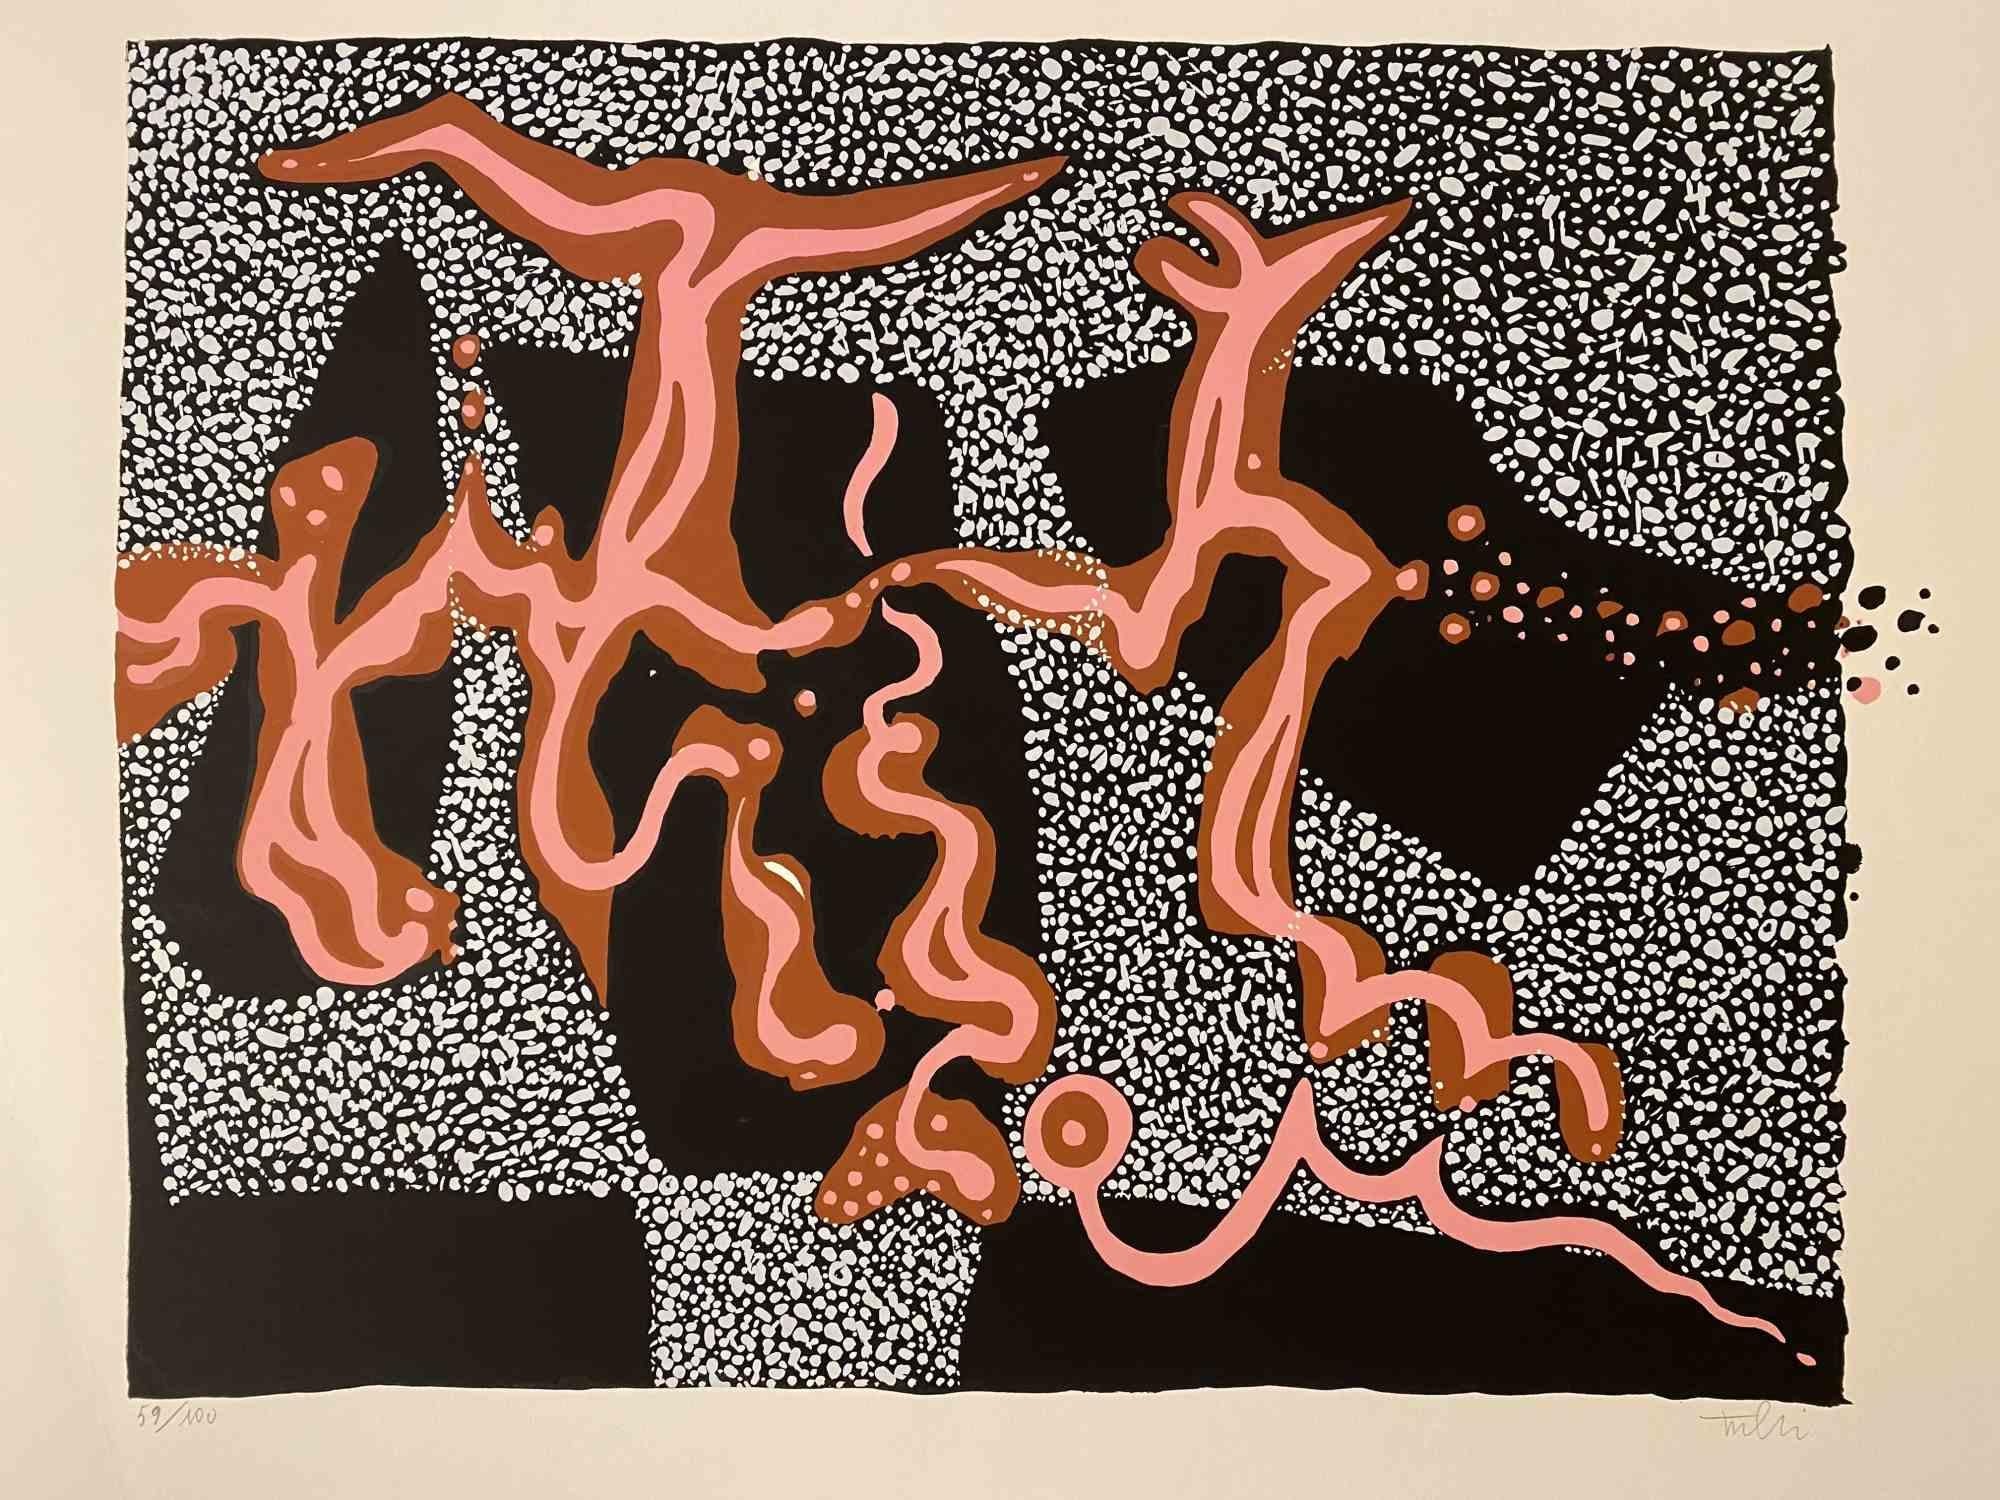 Carnivalesque Composition ist ein farbiger Siebdruck auf Papier, der 1973 von dem italienischen Künstler Wladimiro Tulli realisiert wurde.

Rechts unten handsigniert.

Nummerierte Auflage von 59/100.

Ein schönes Kunstwerk, das eine abstrakte